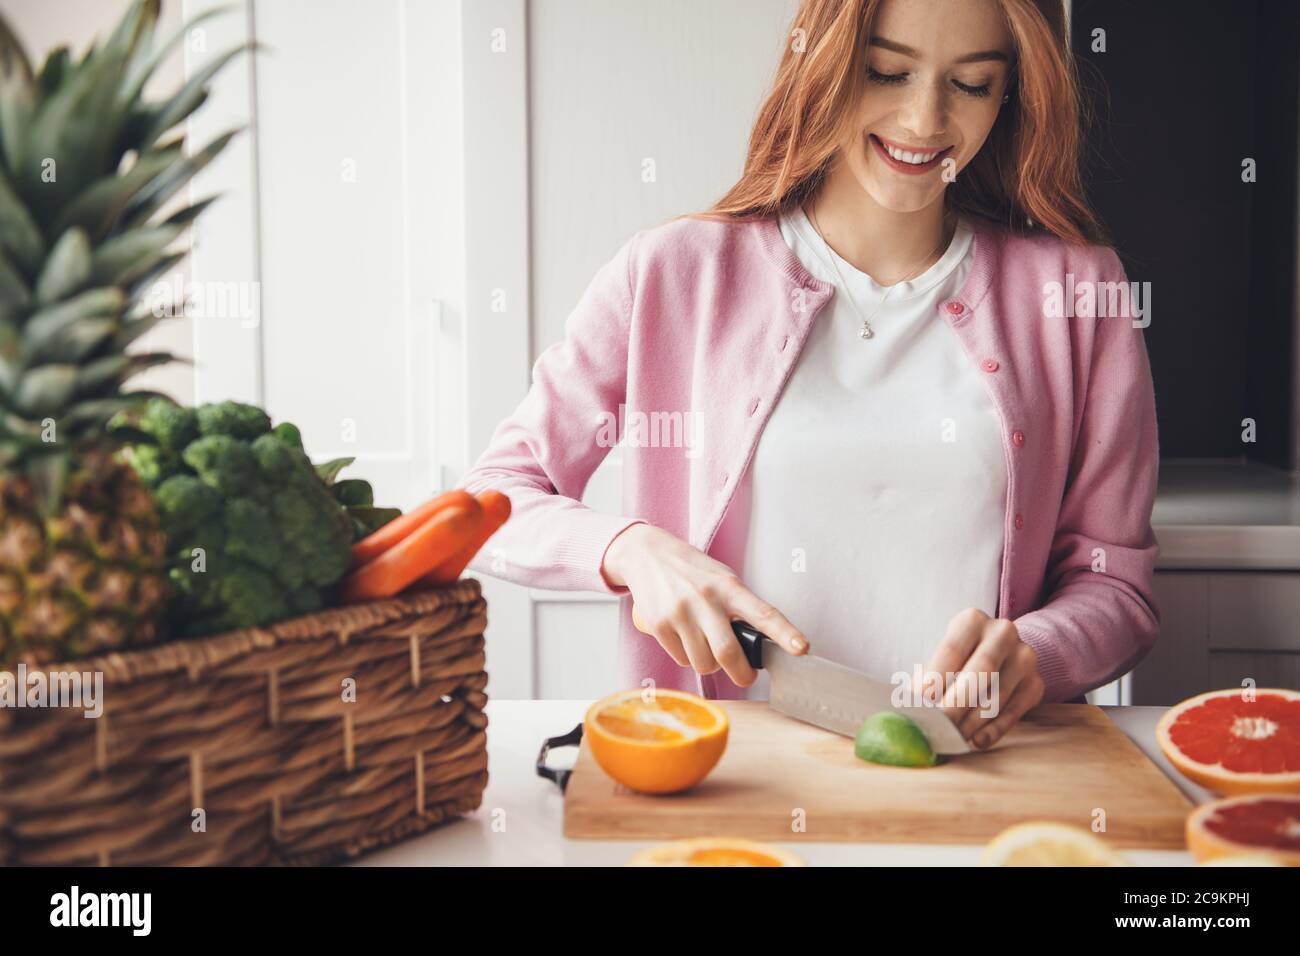 Magnifique femme caucasienne avec des cheveux rouges et des taches de rousseur souriant tout en coupant un citron vert dans la cuisine avec un couteau Banque D'Images